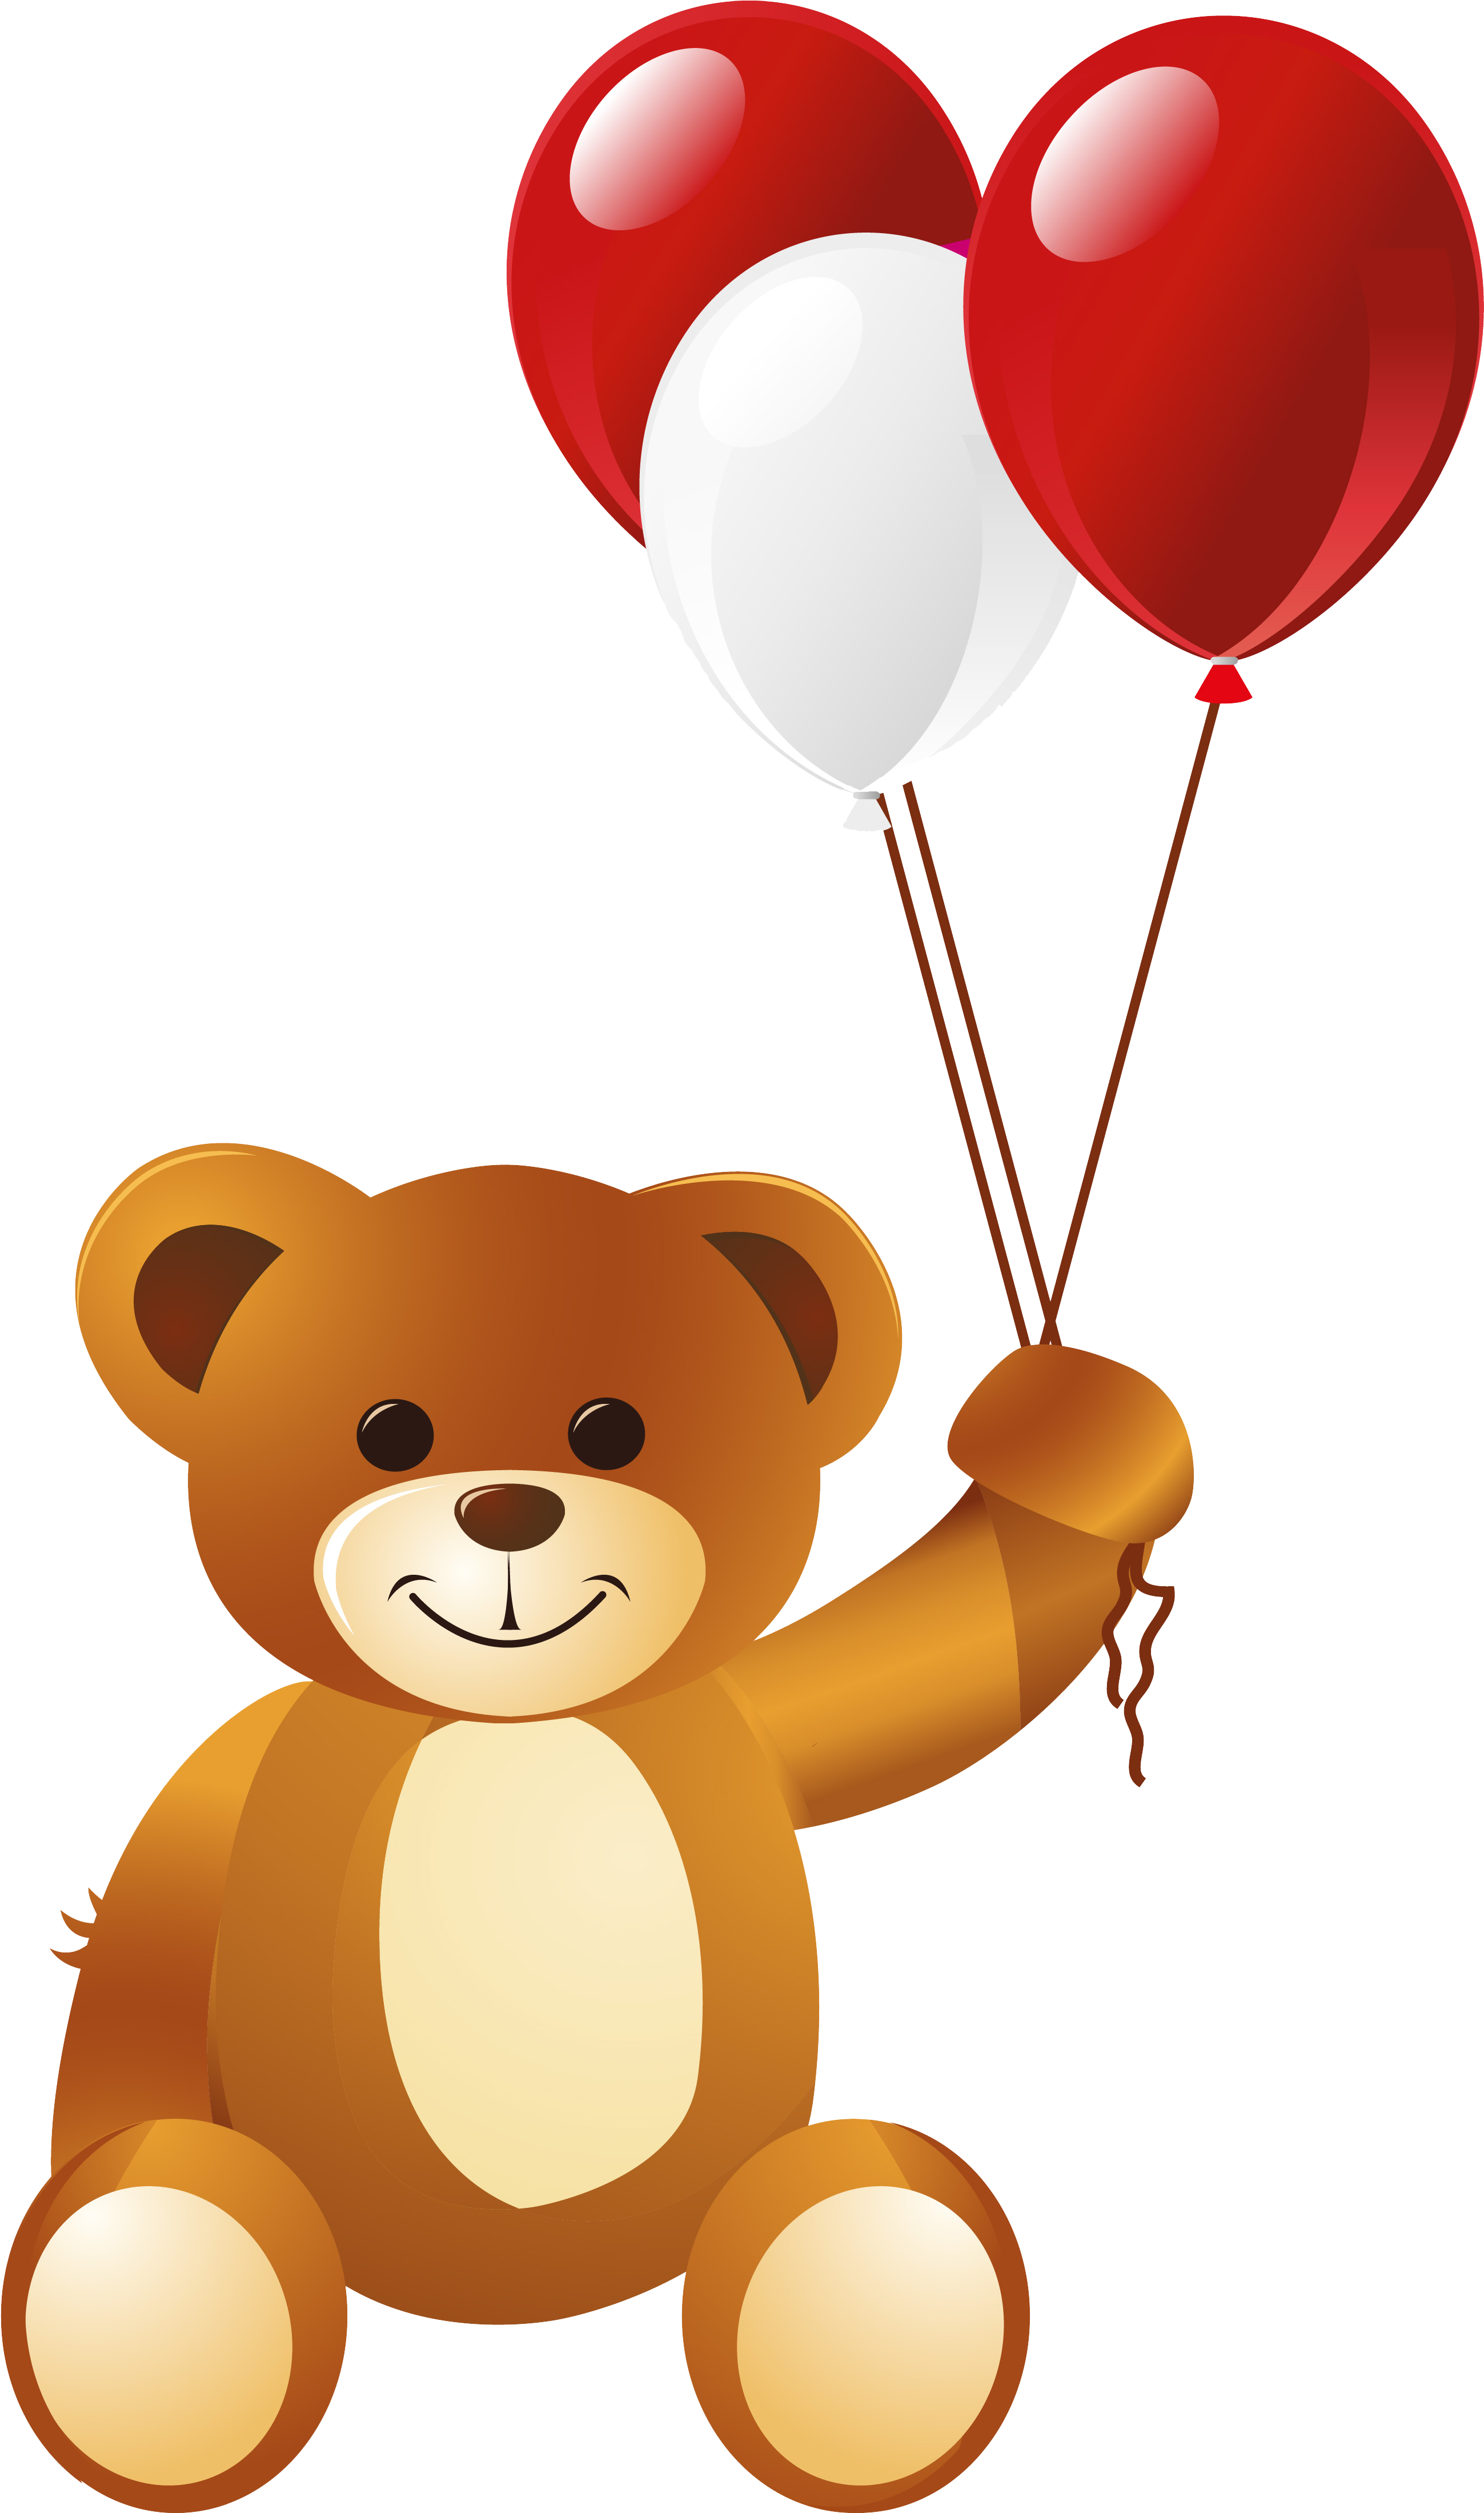 Teddy Bear Balloon Clip Art - Teddy Bear Balloon Clip Art.